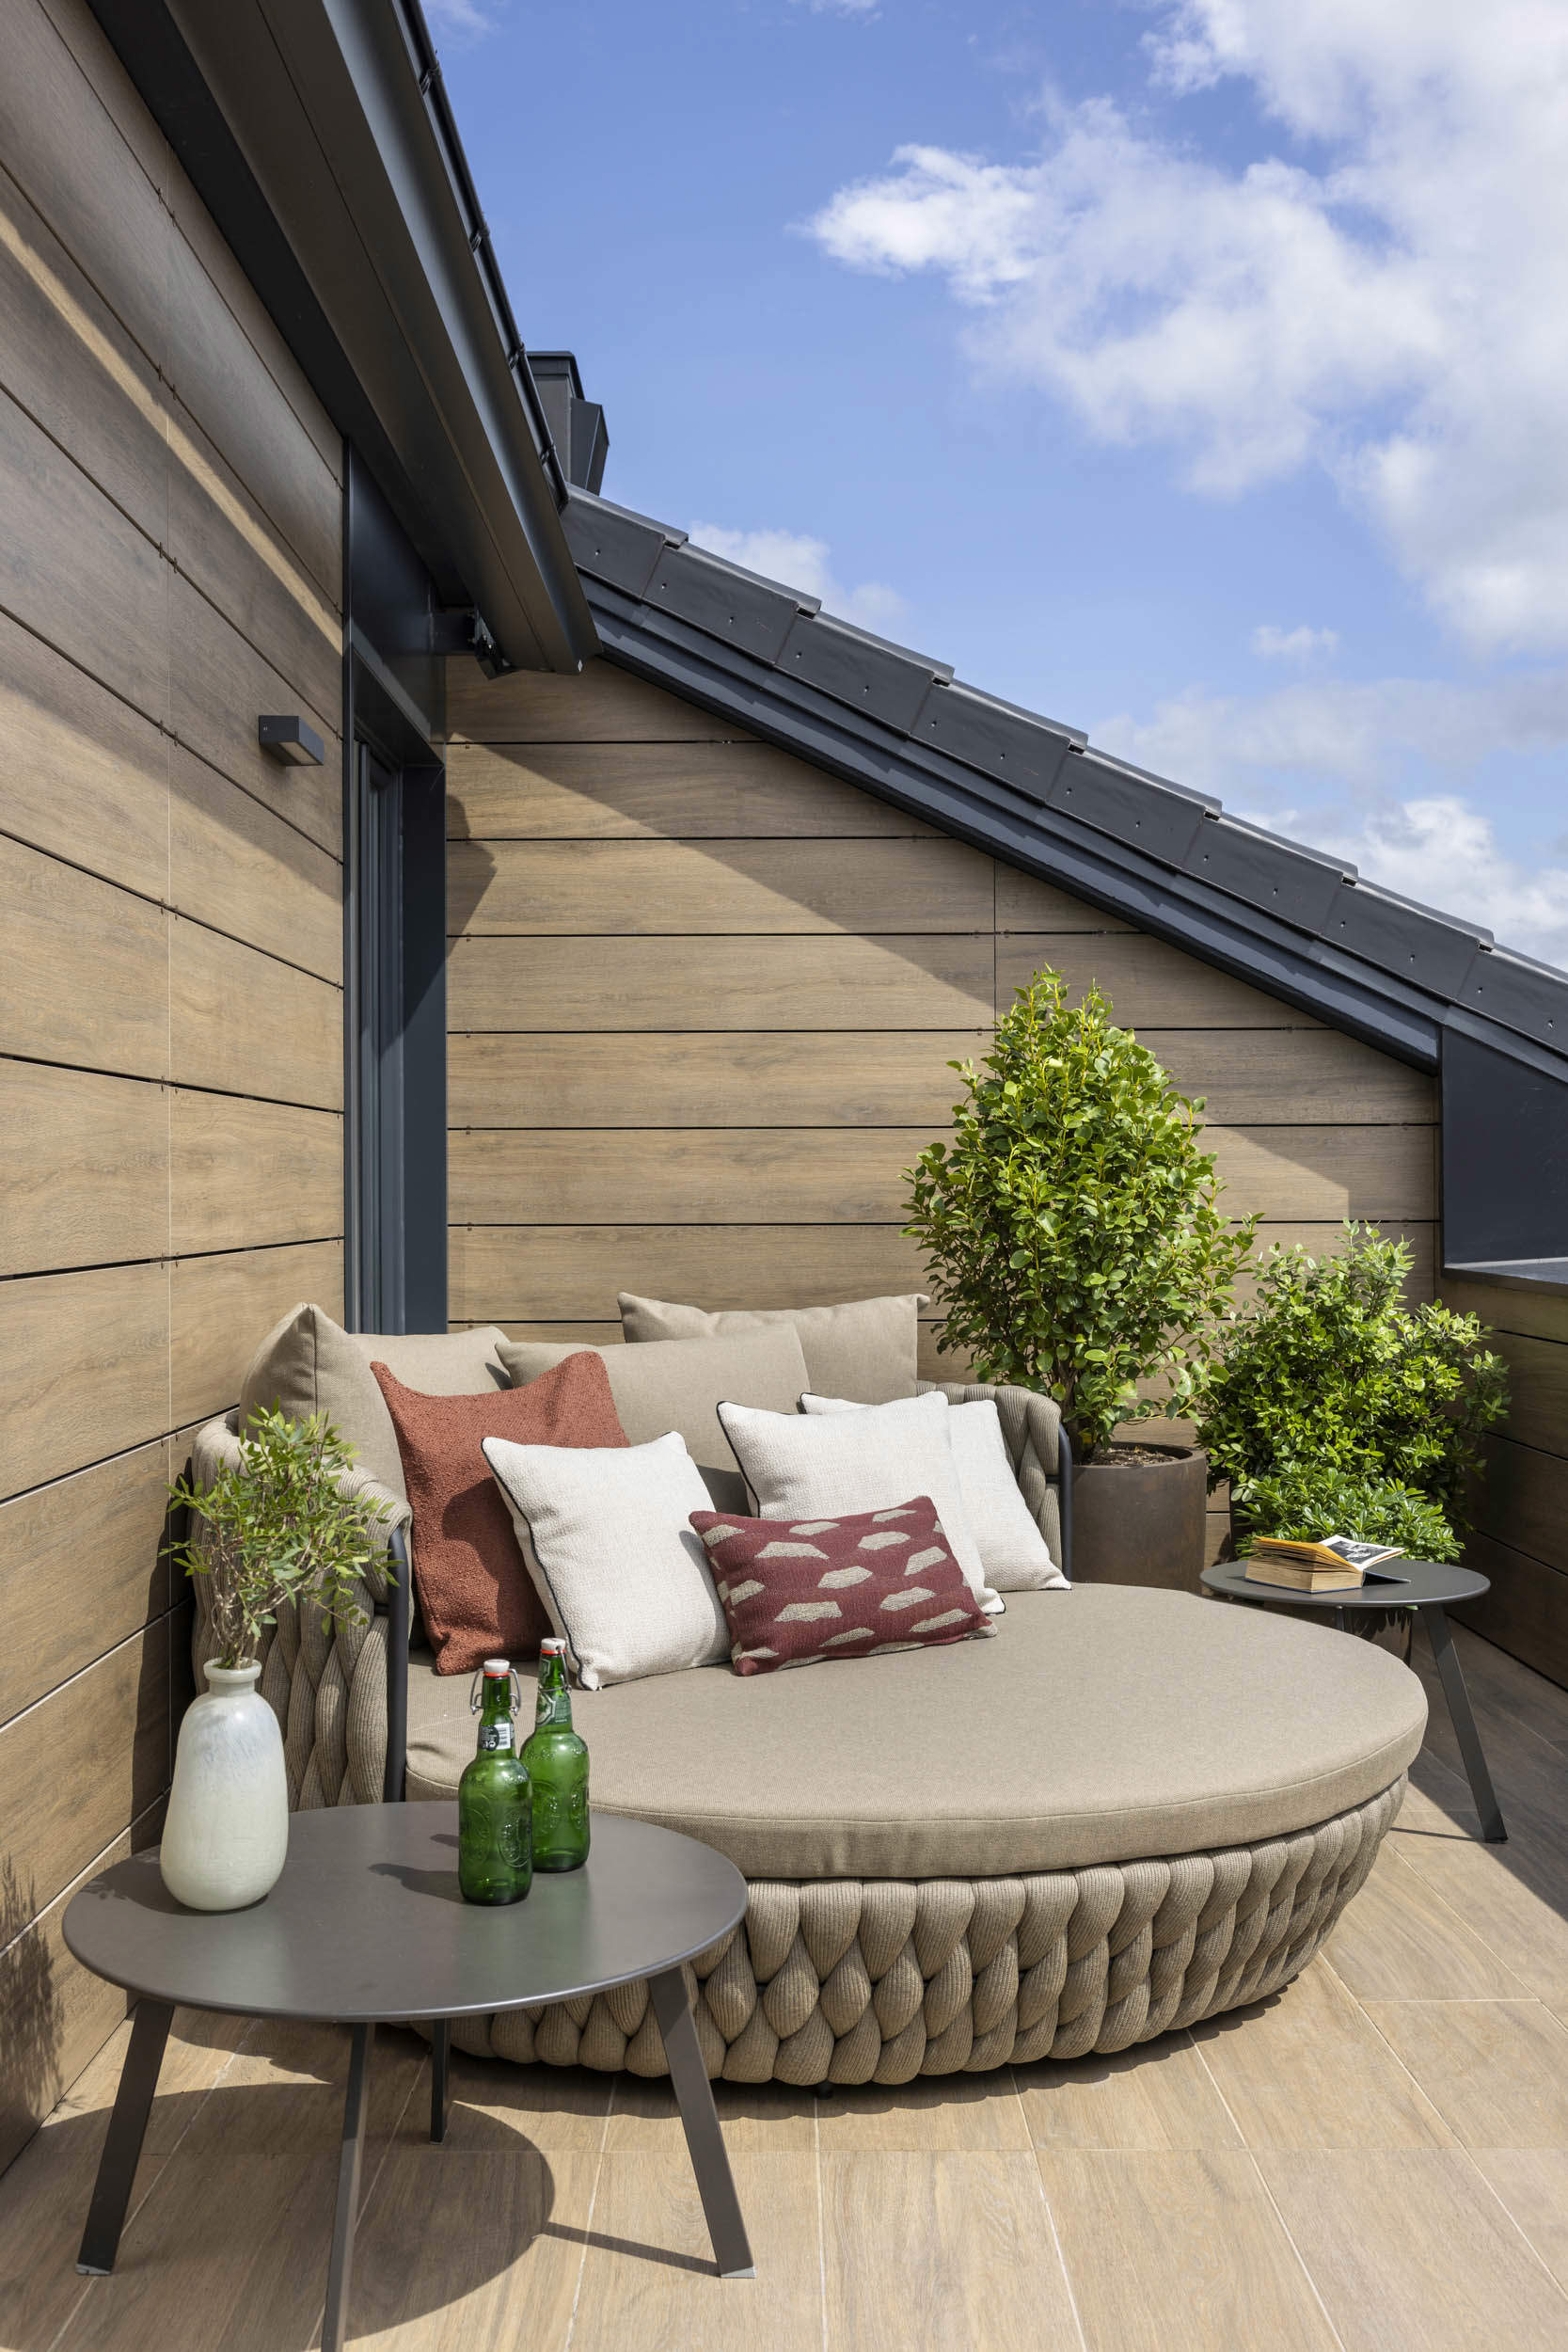 Una terraza chill out con sillón y decoración natural.